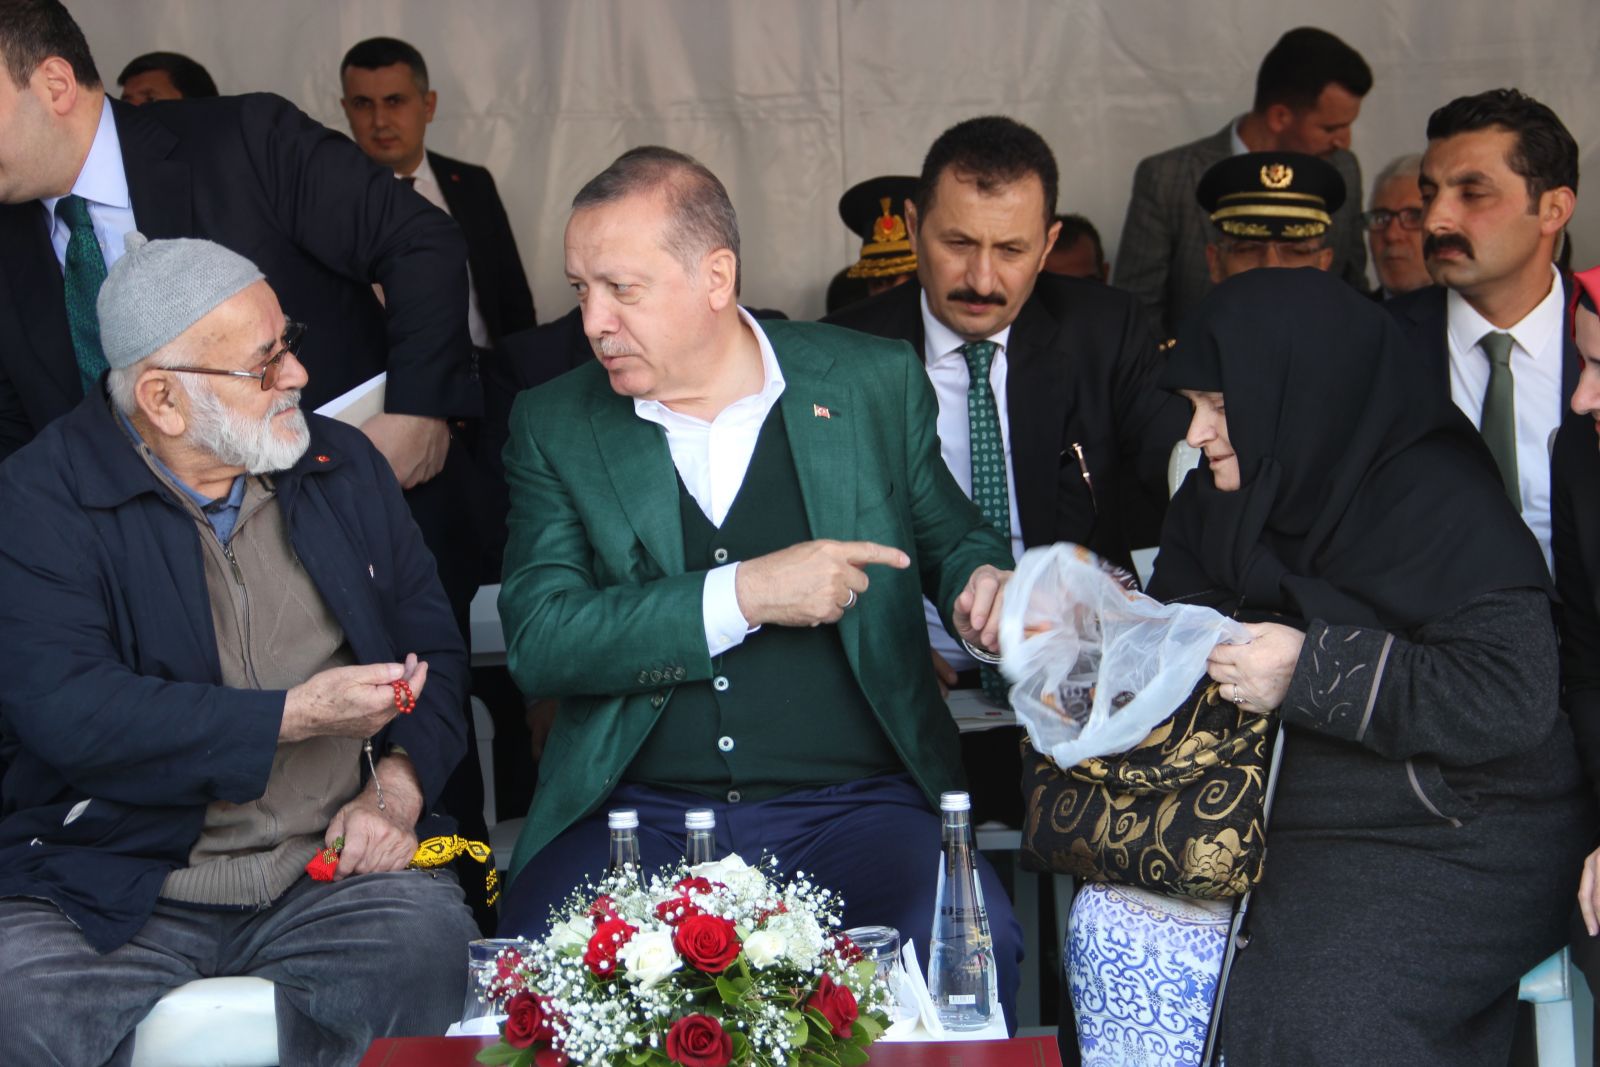 أردوغان: لا أُمارس السياسة من أجل المناصب بل لكسْبِ دعاء أمّتي